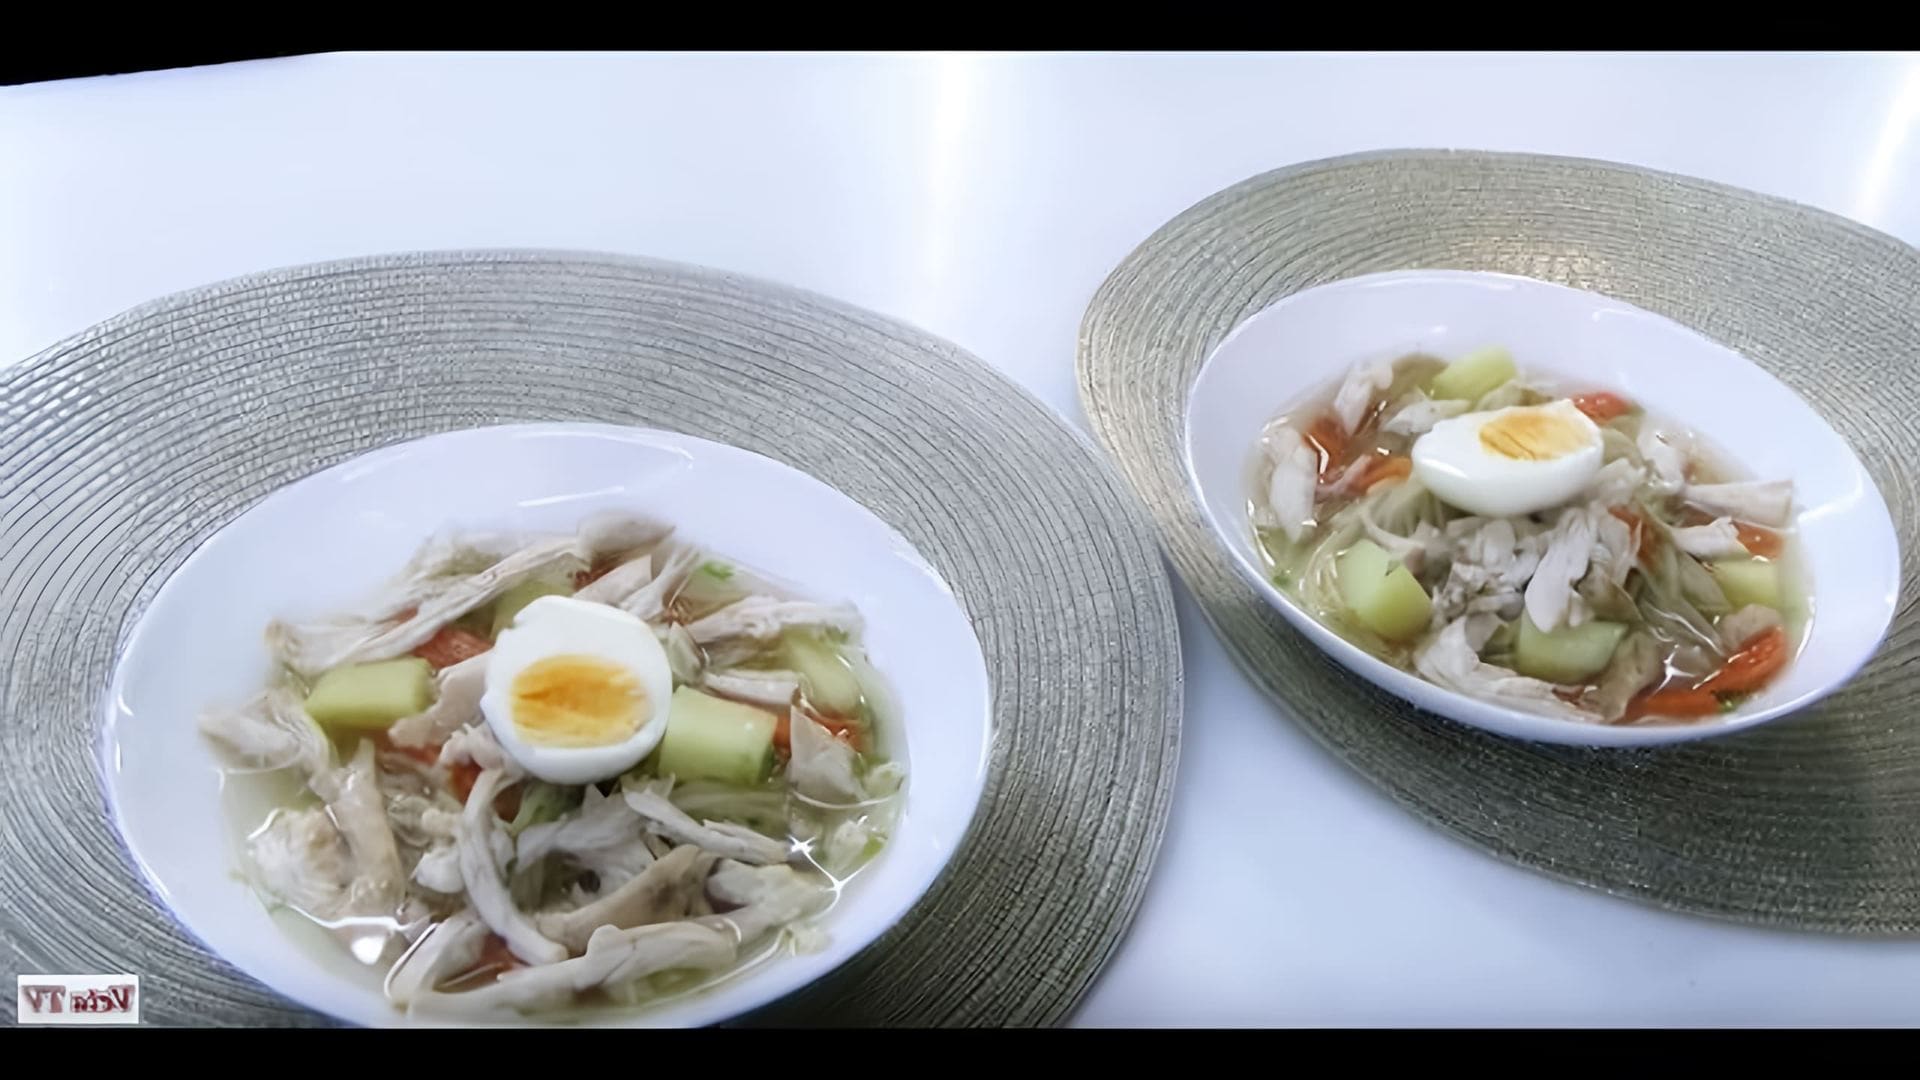 В этом видео демонстрируется рецепт приготовления супа сборного